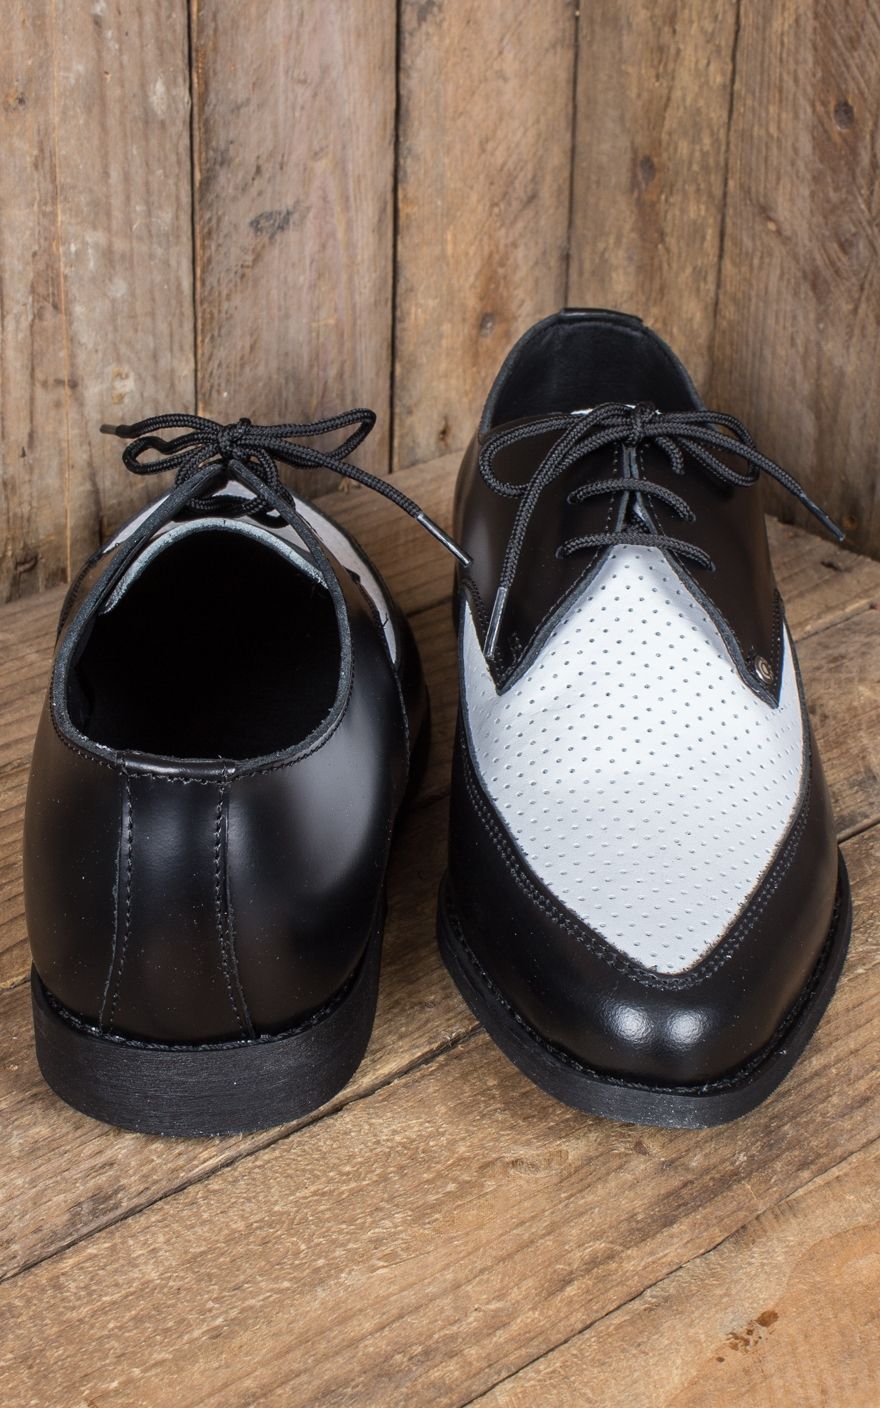 "Zapatos Elvis Jam - Simpson 50s Rockabilly Star"Zapato Jam clásico de Steelground en negro/blanco. clásico zapato de hombre.